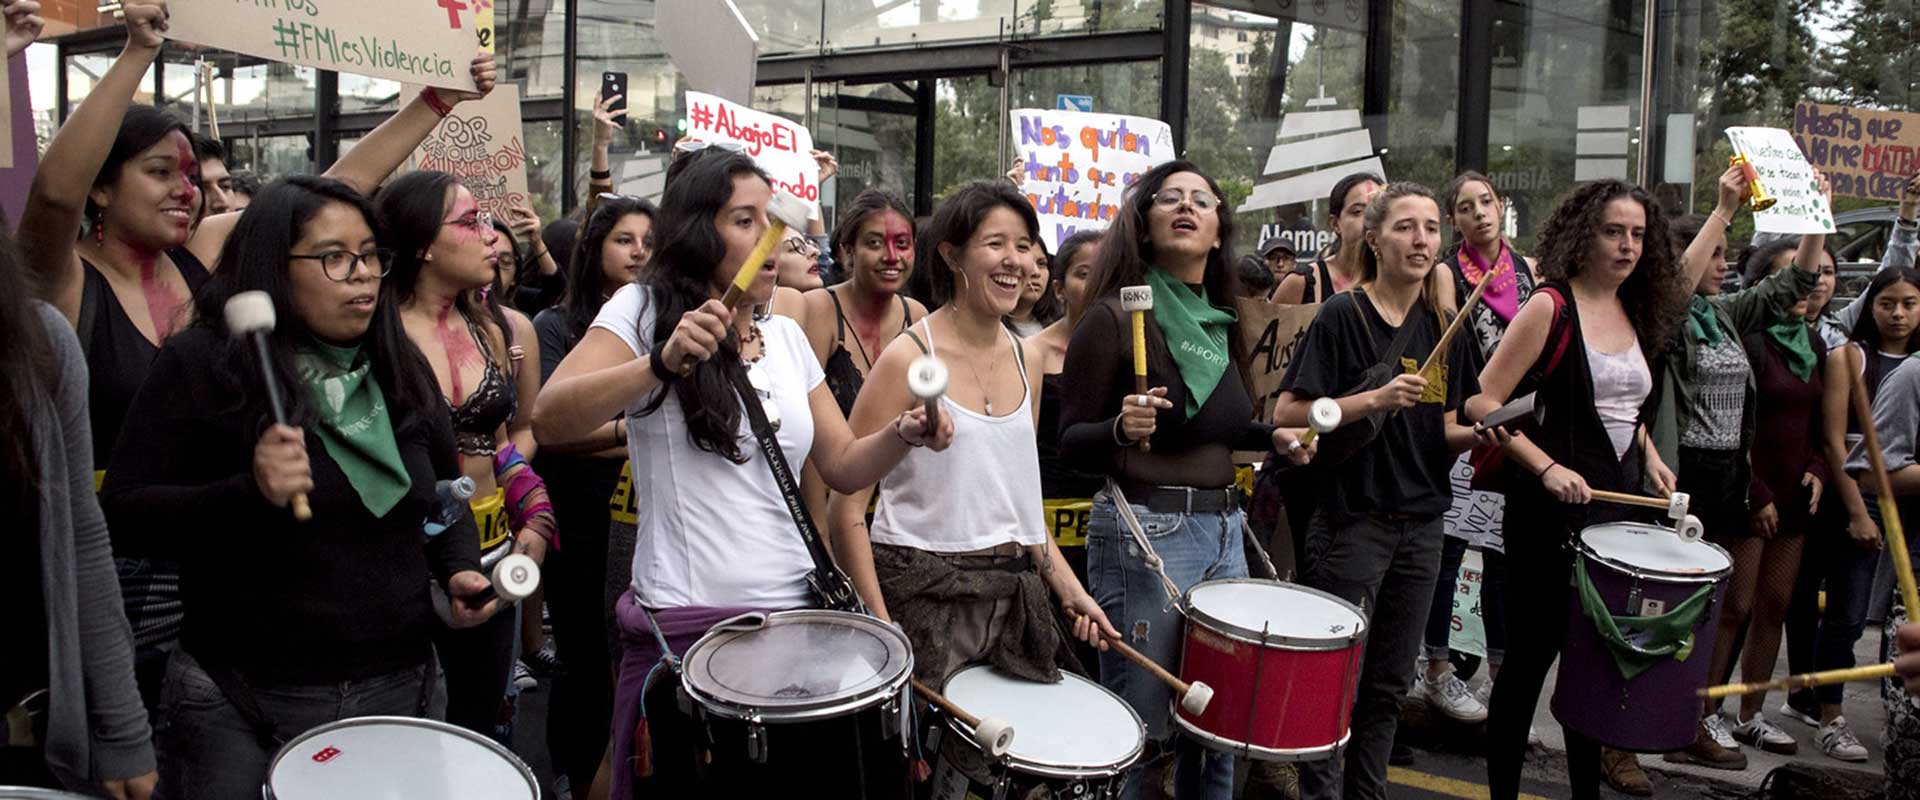 Activistas, líderes sociales, organizaciones, mujeres y hombres se manifiestan contra la violencia de género durante la Marcha "Vivas nos Queremos". Foto: ONU Mujeres/Johis Alarcón